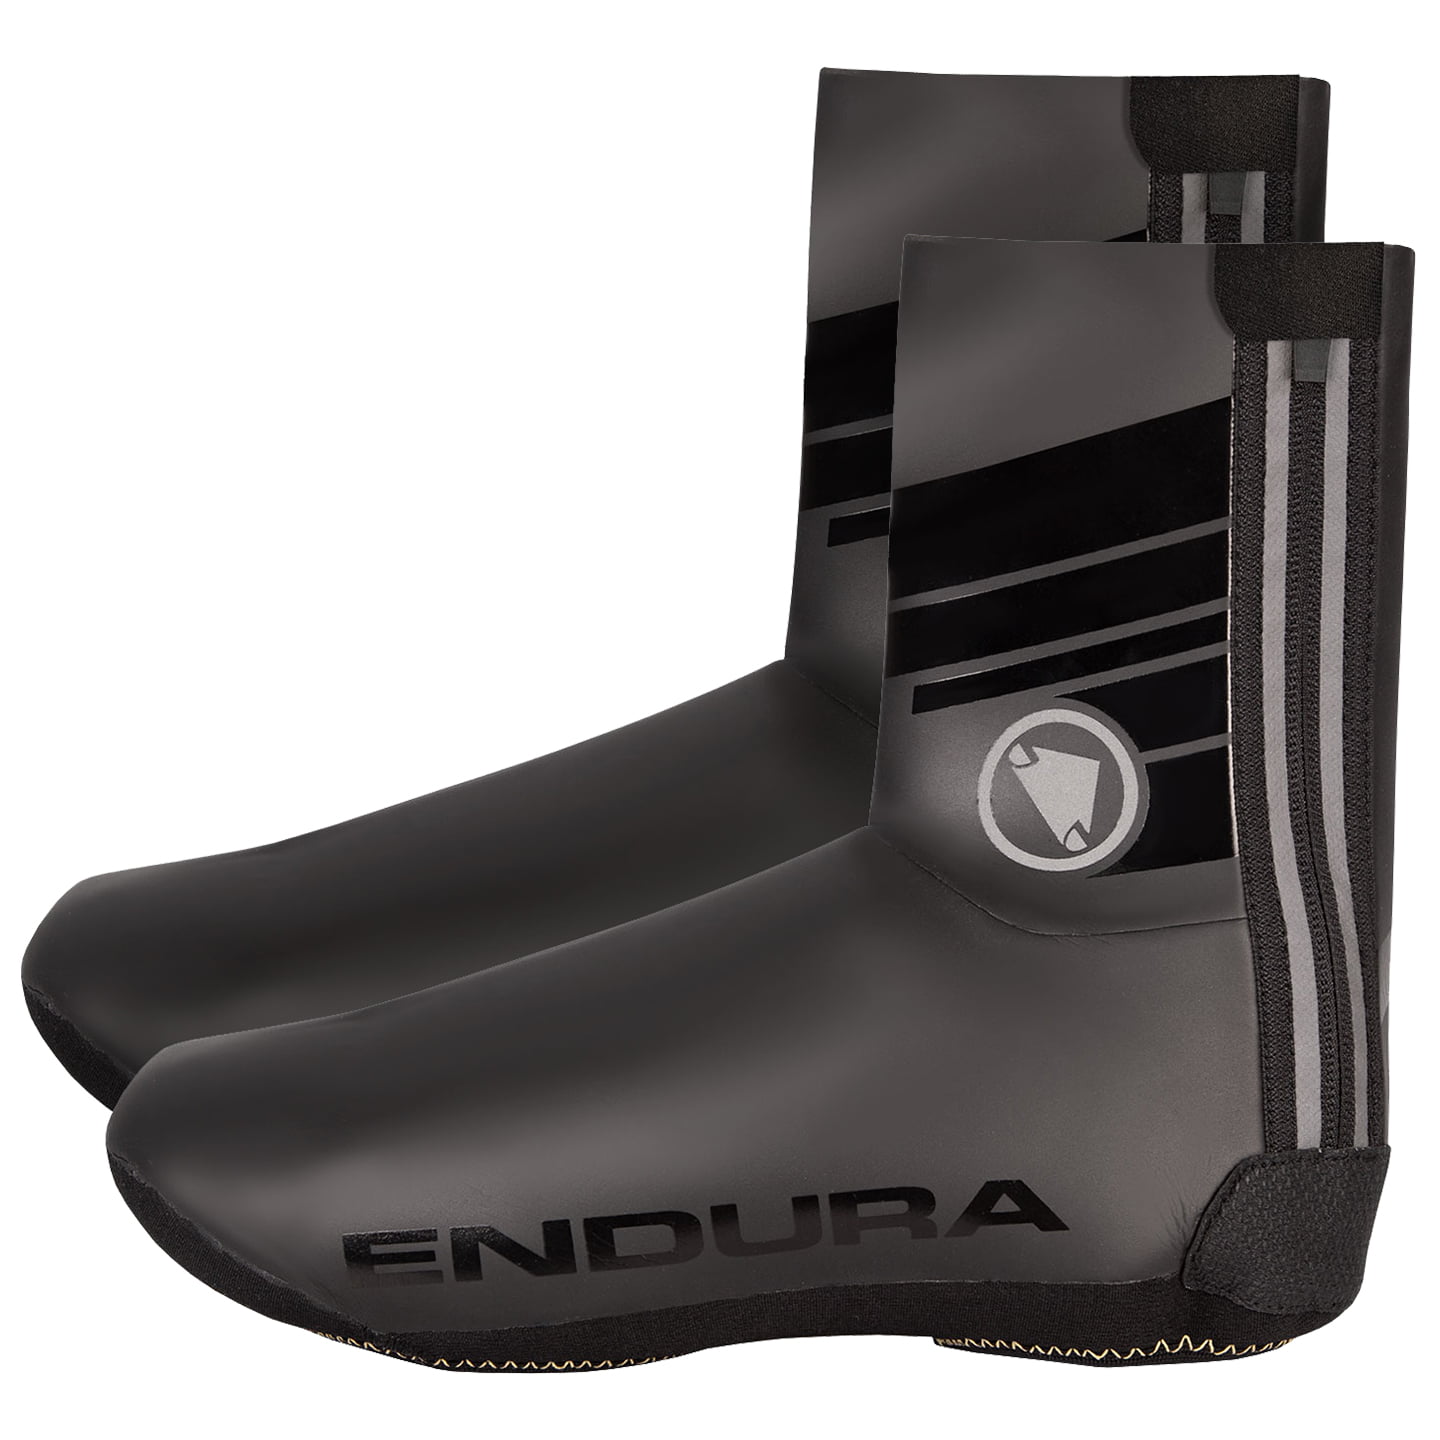 ENDURA Road Bike Rain Shoe Covers Thermal Shoe Covers, Unisex (women / men), size M, Cycling clothing